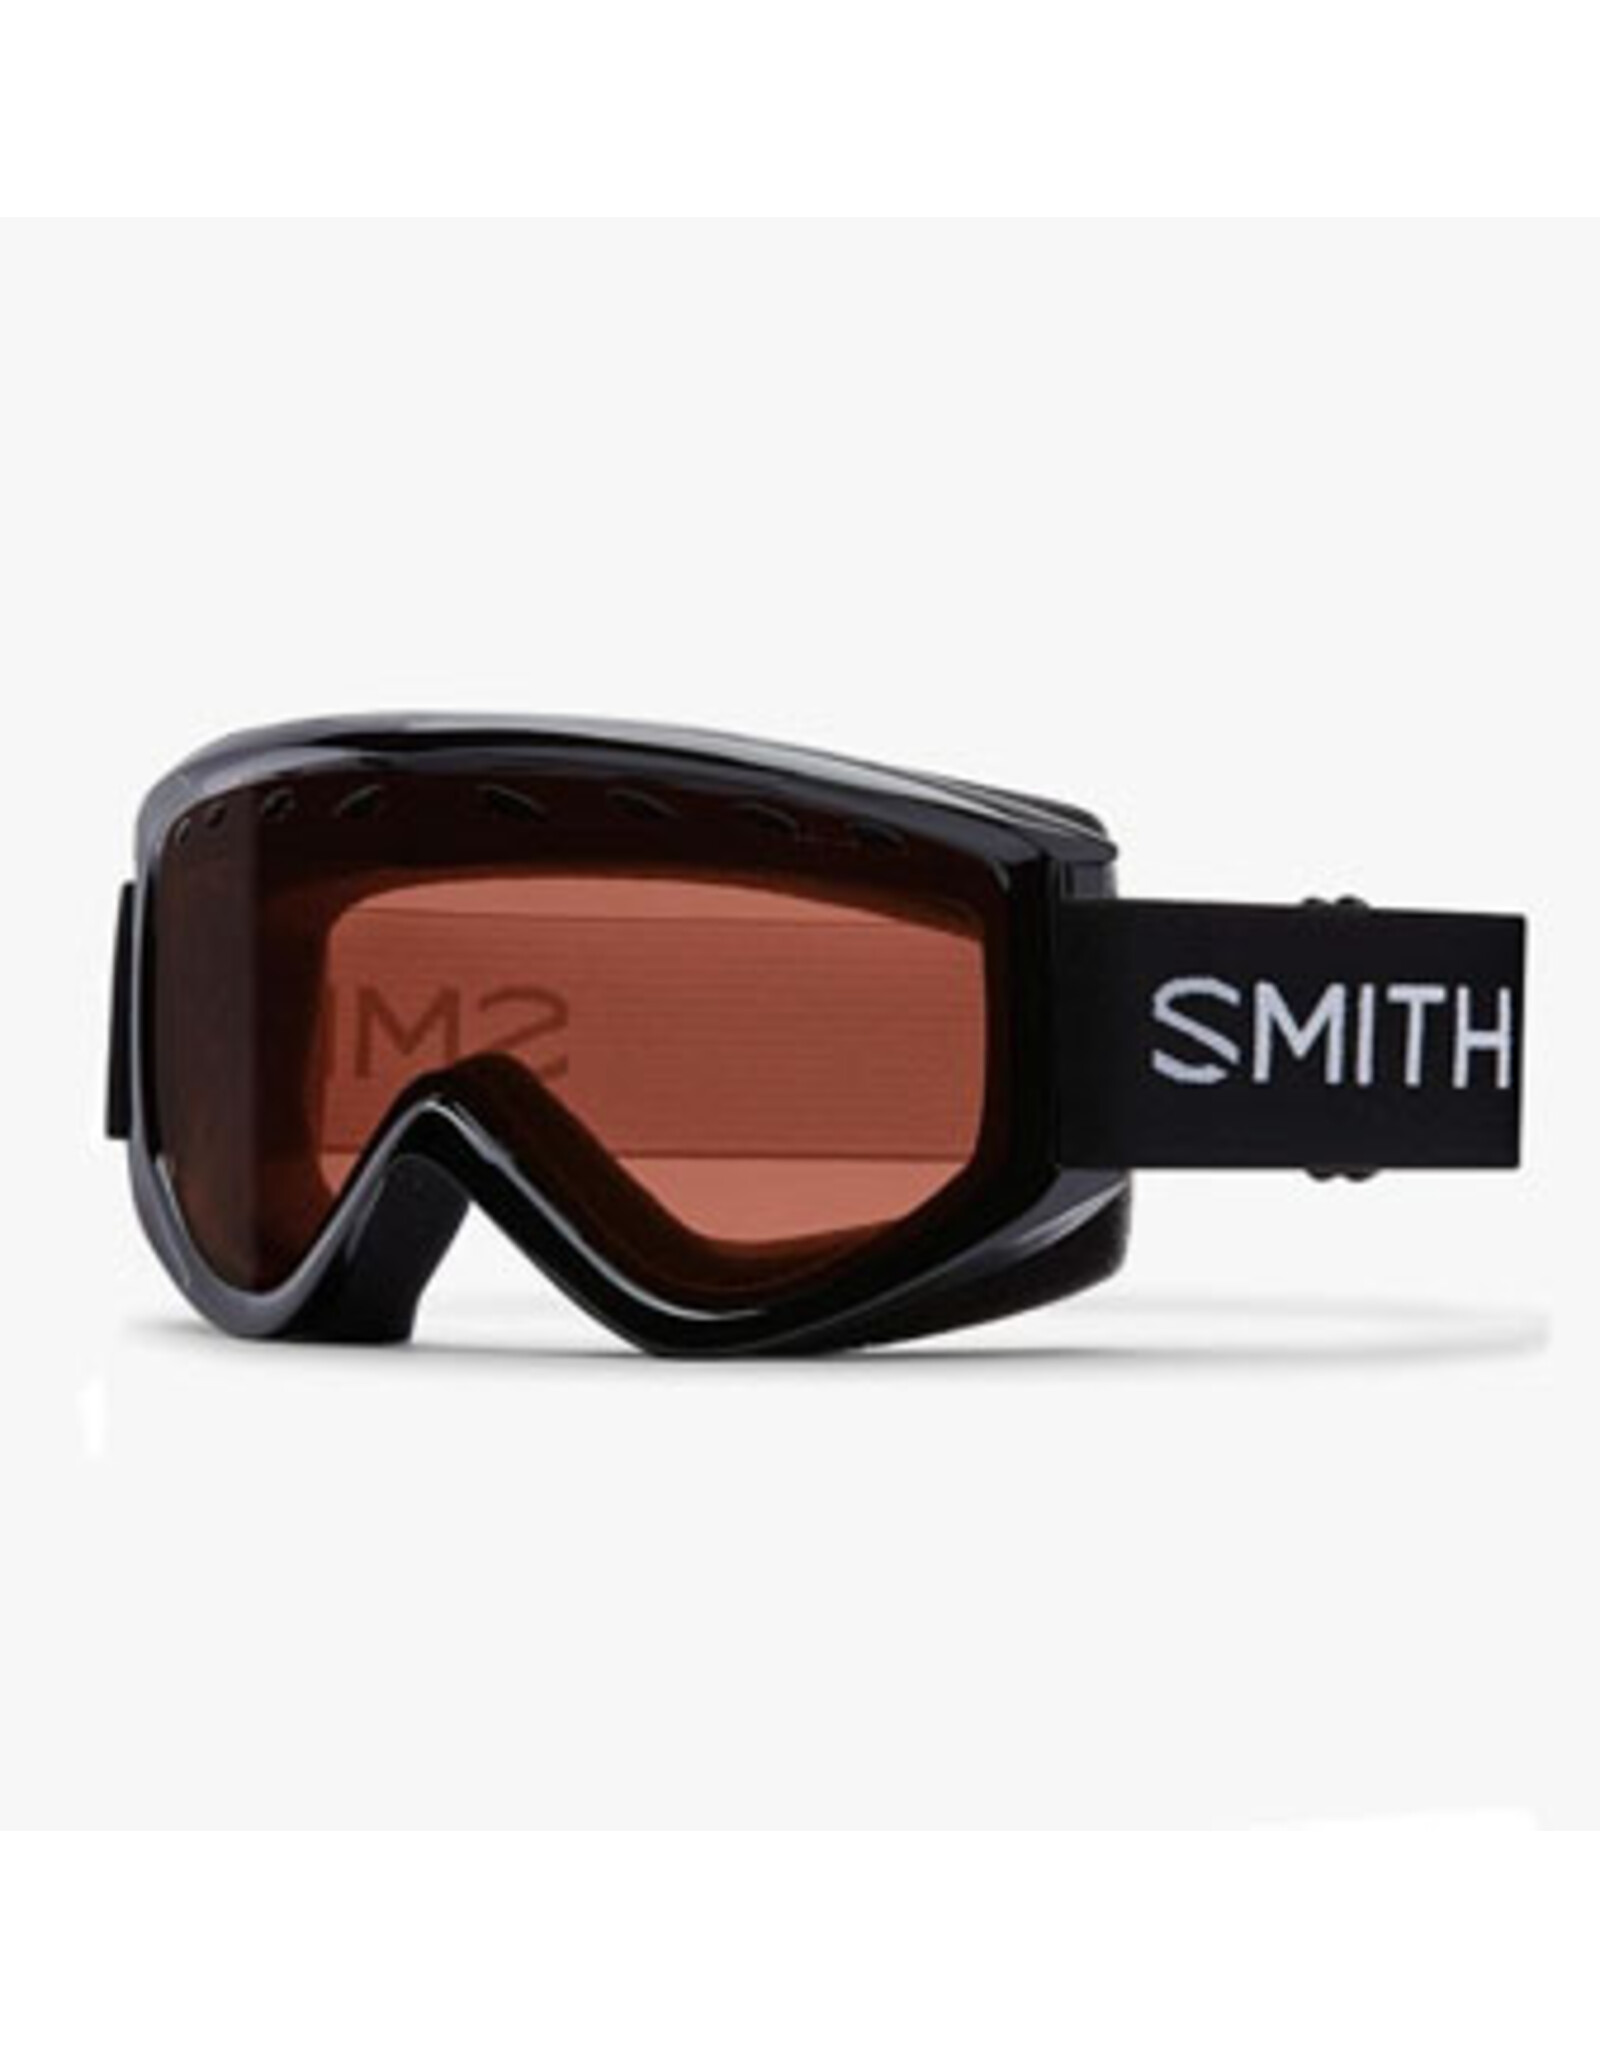 Smith Smith Electra Goggle: Black Frame/RC36 Lens